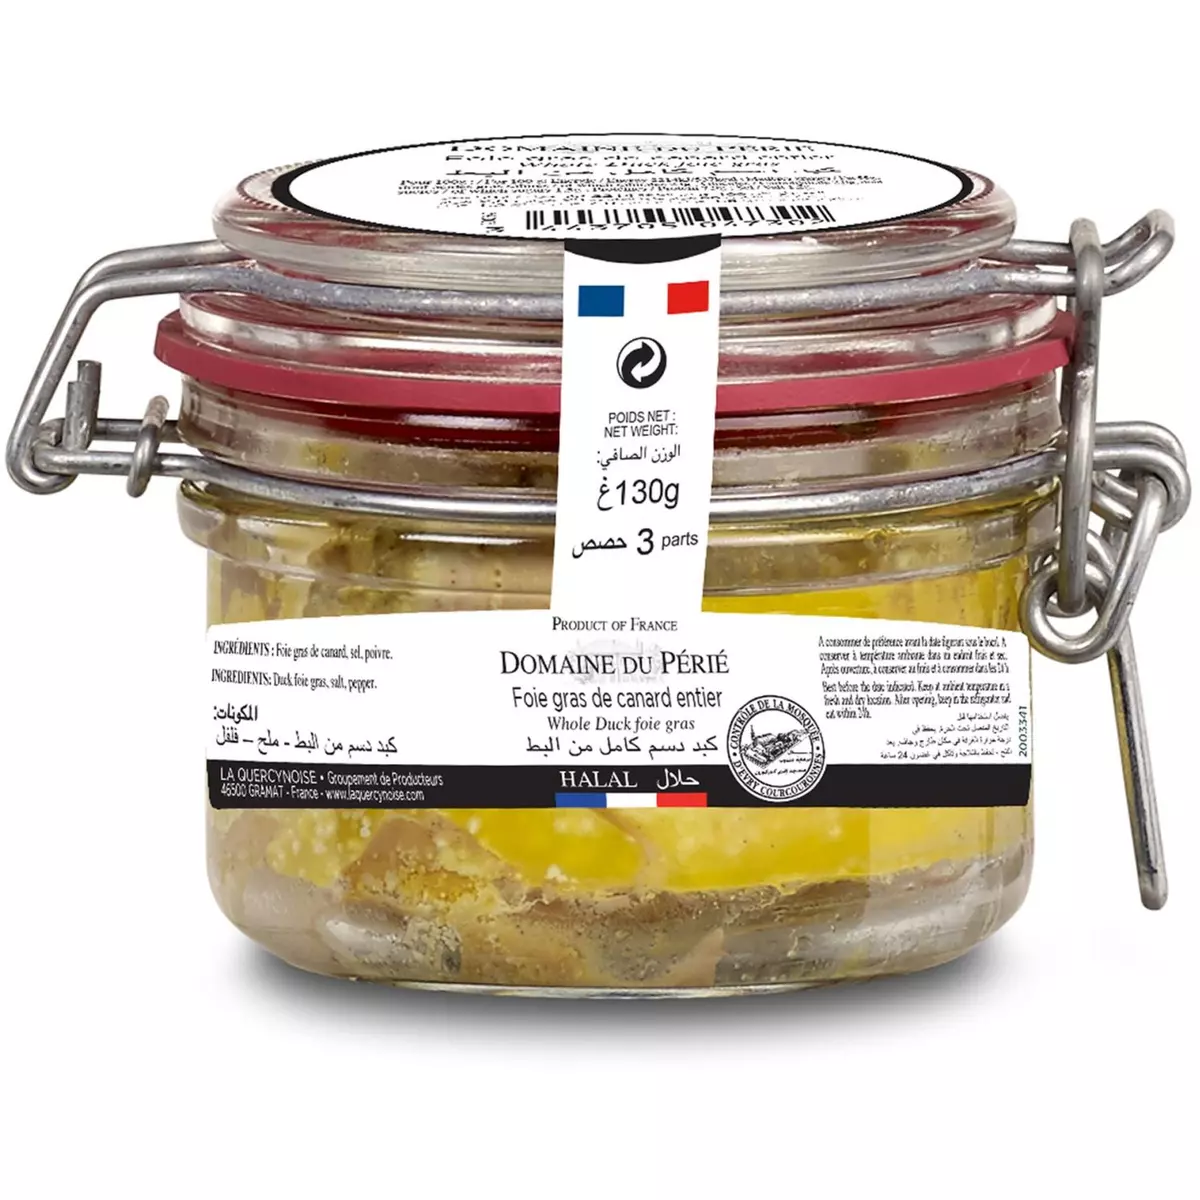 DOMAINE DU PERIE Foie gras de canard entier halal 3 parts 130g pas